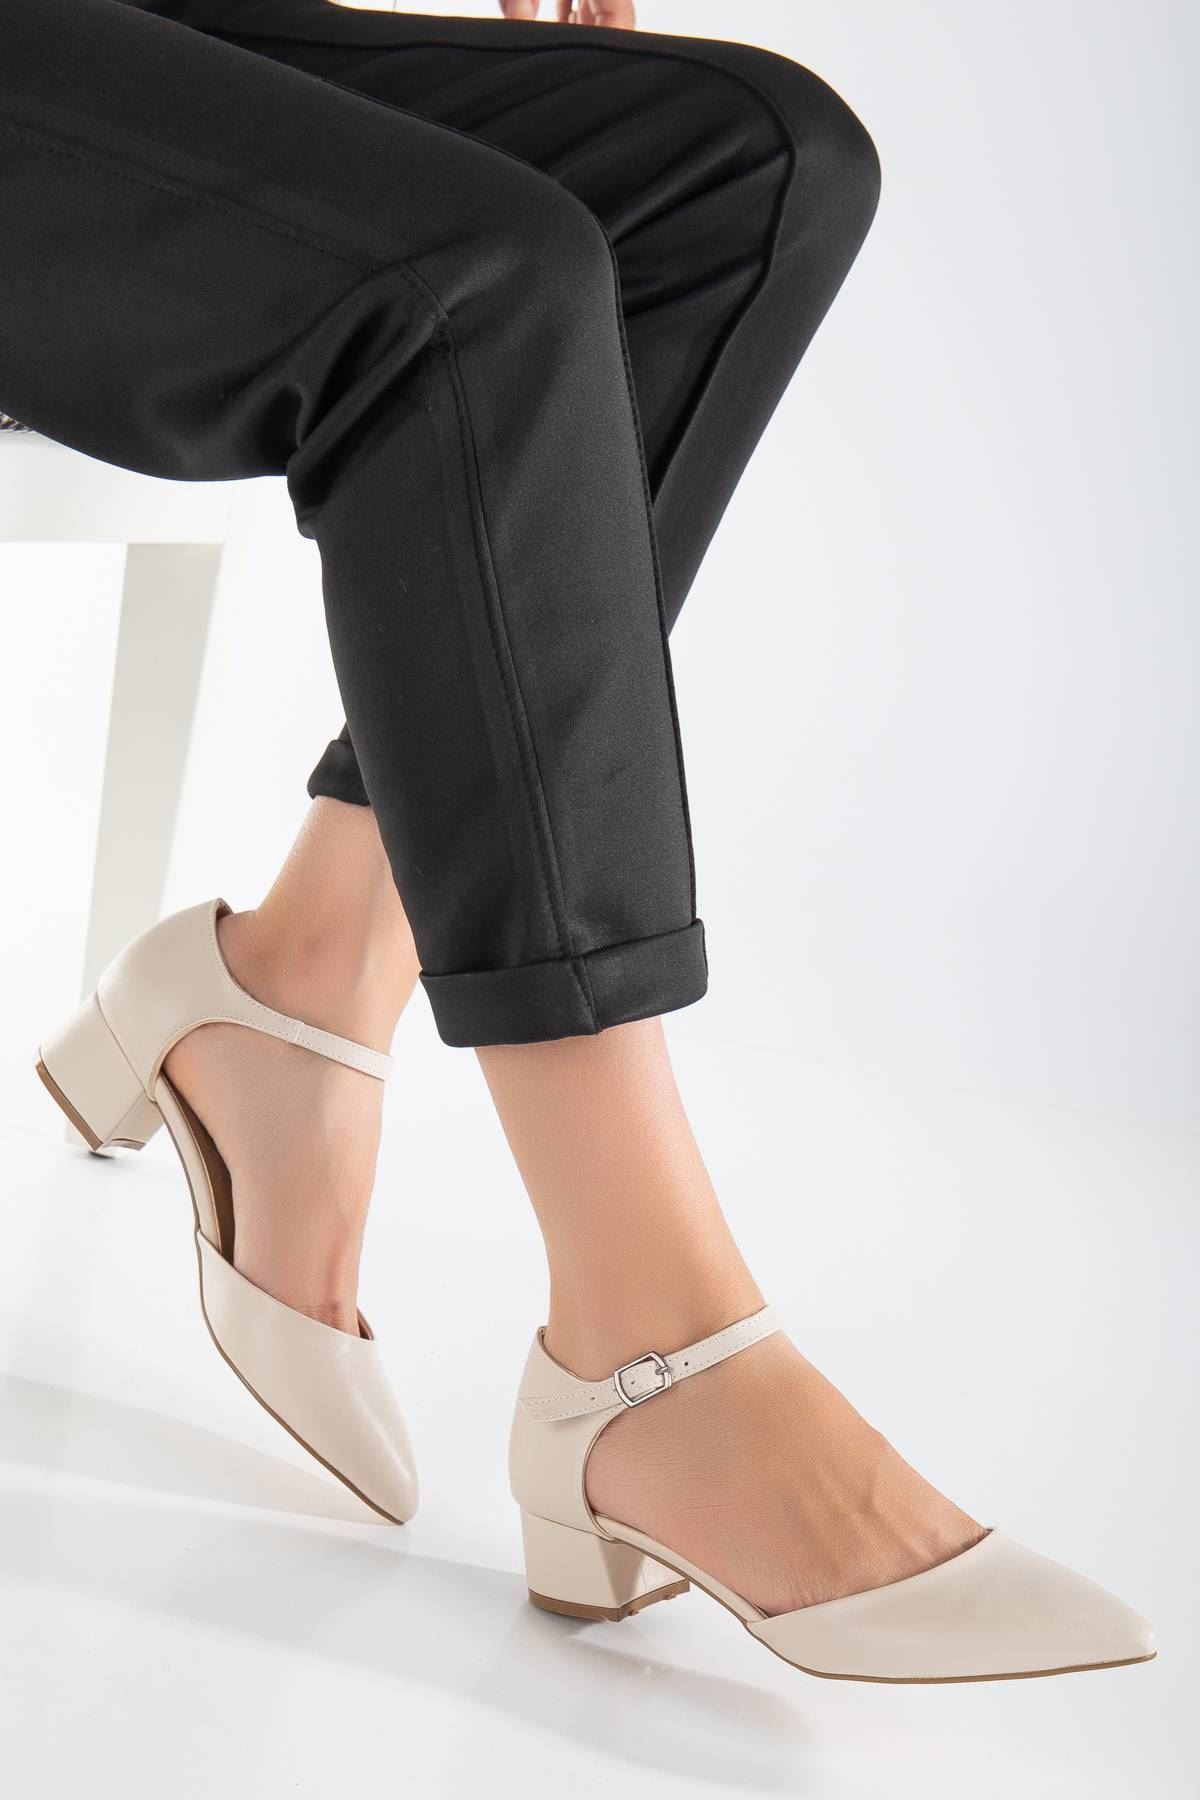 Jewel Kadın Topuklu Ayakkabı Ten Cilt